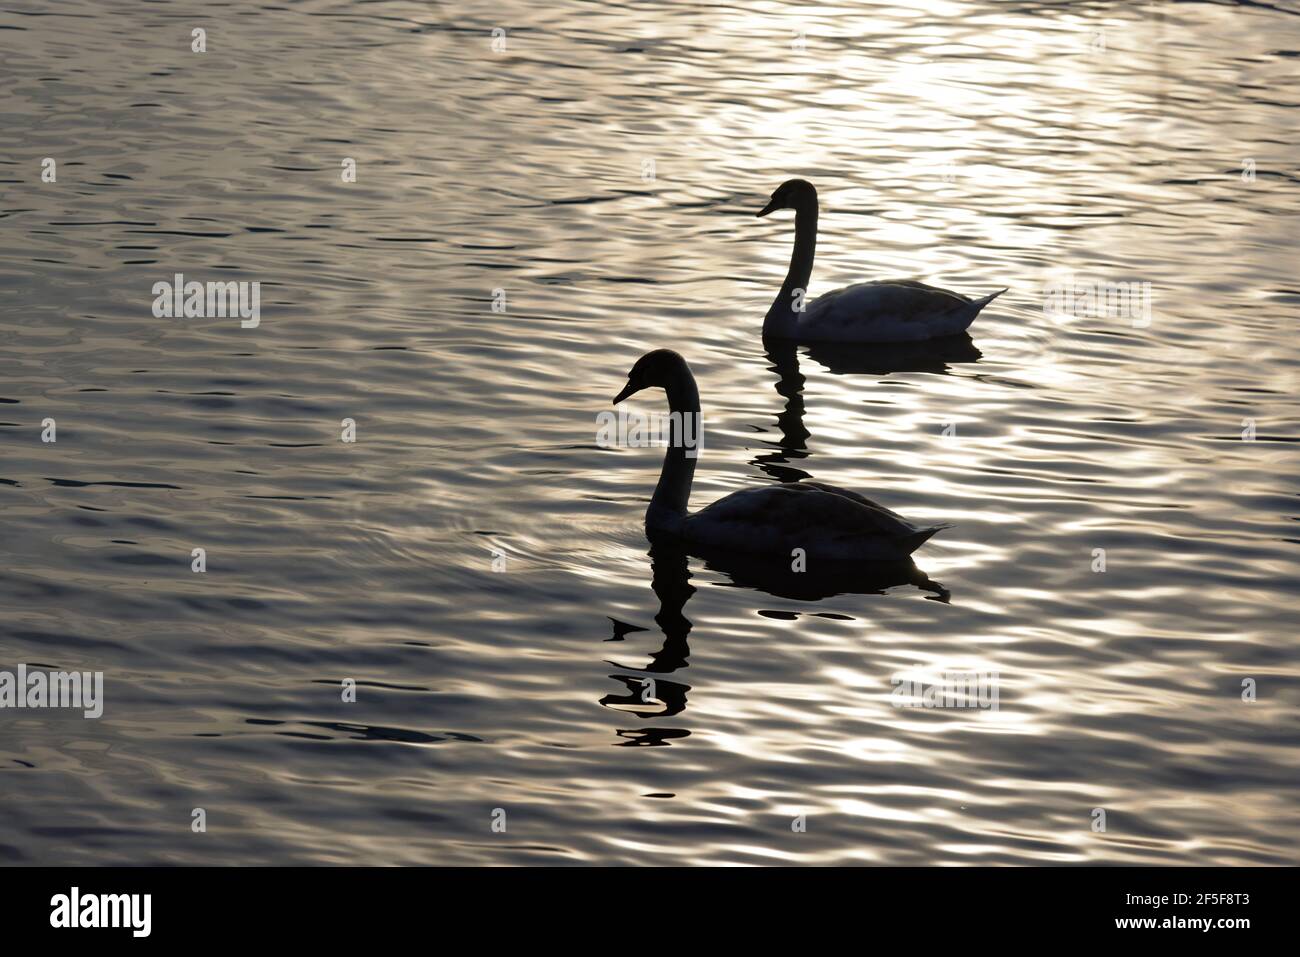 due cigni dalla silhouette scura contro la luce del tramonto, la luce della sera si riflette nell'acqua, umore impressionante, senza persone Foto Stock